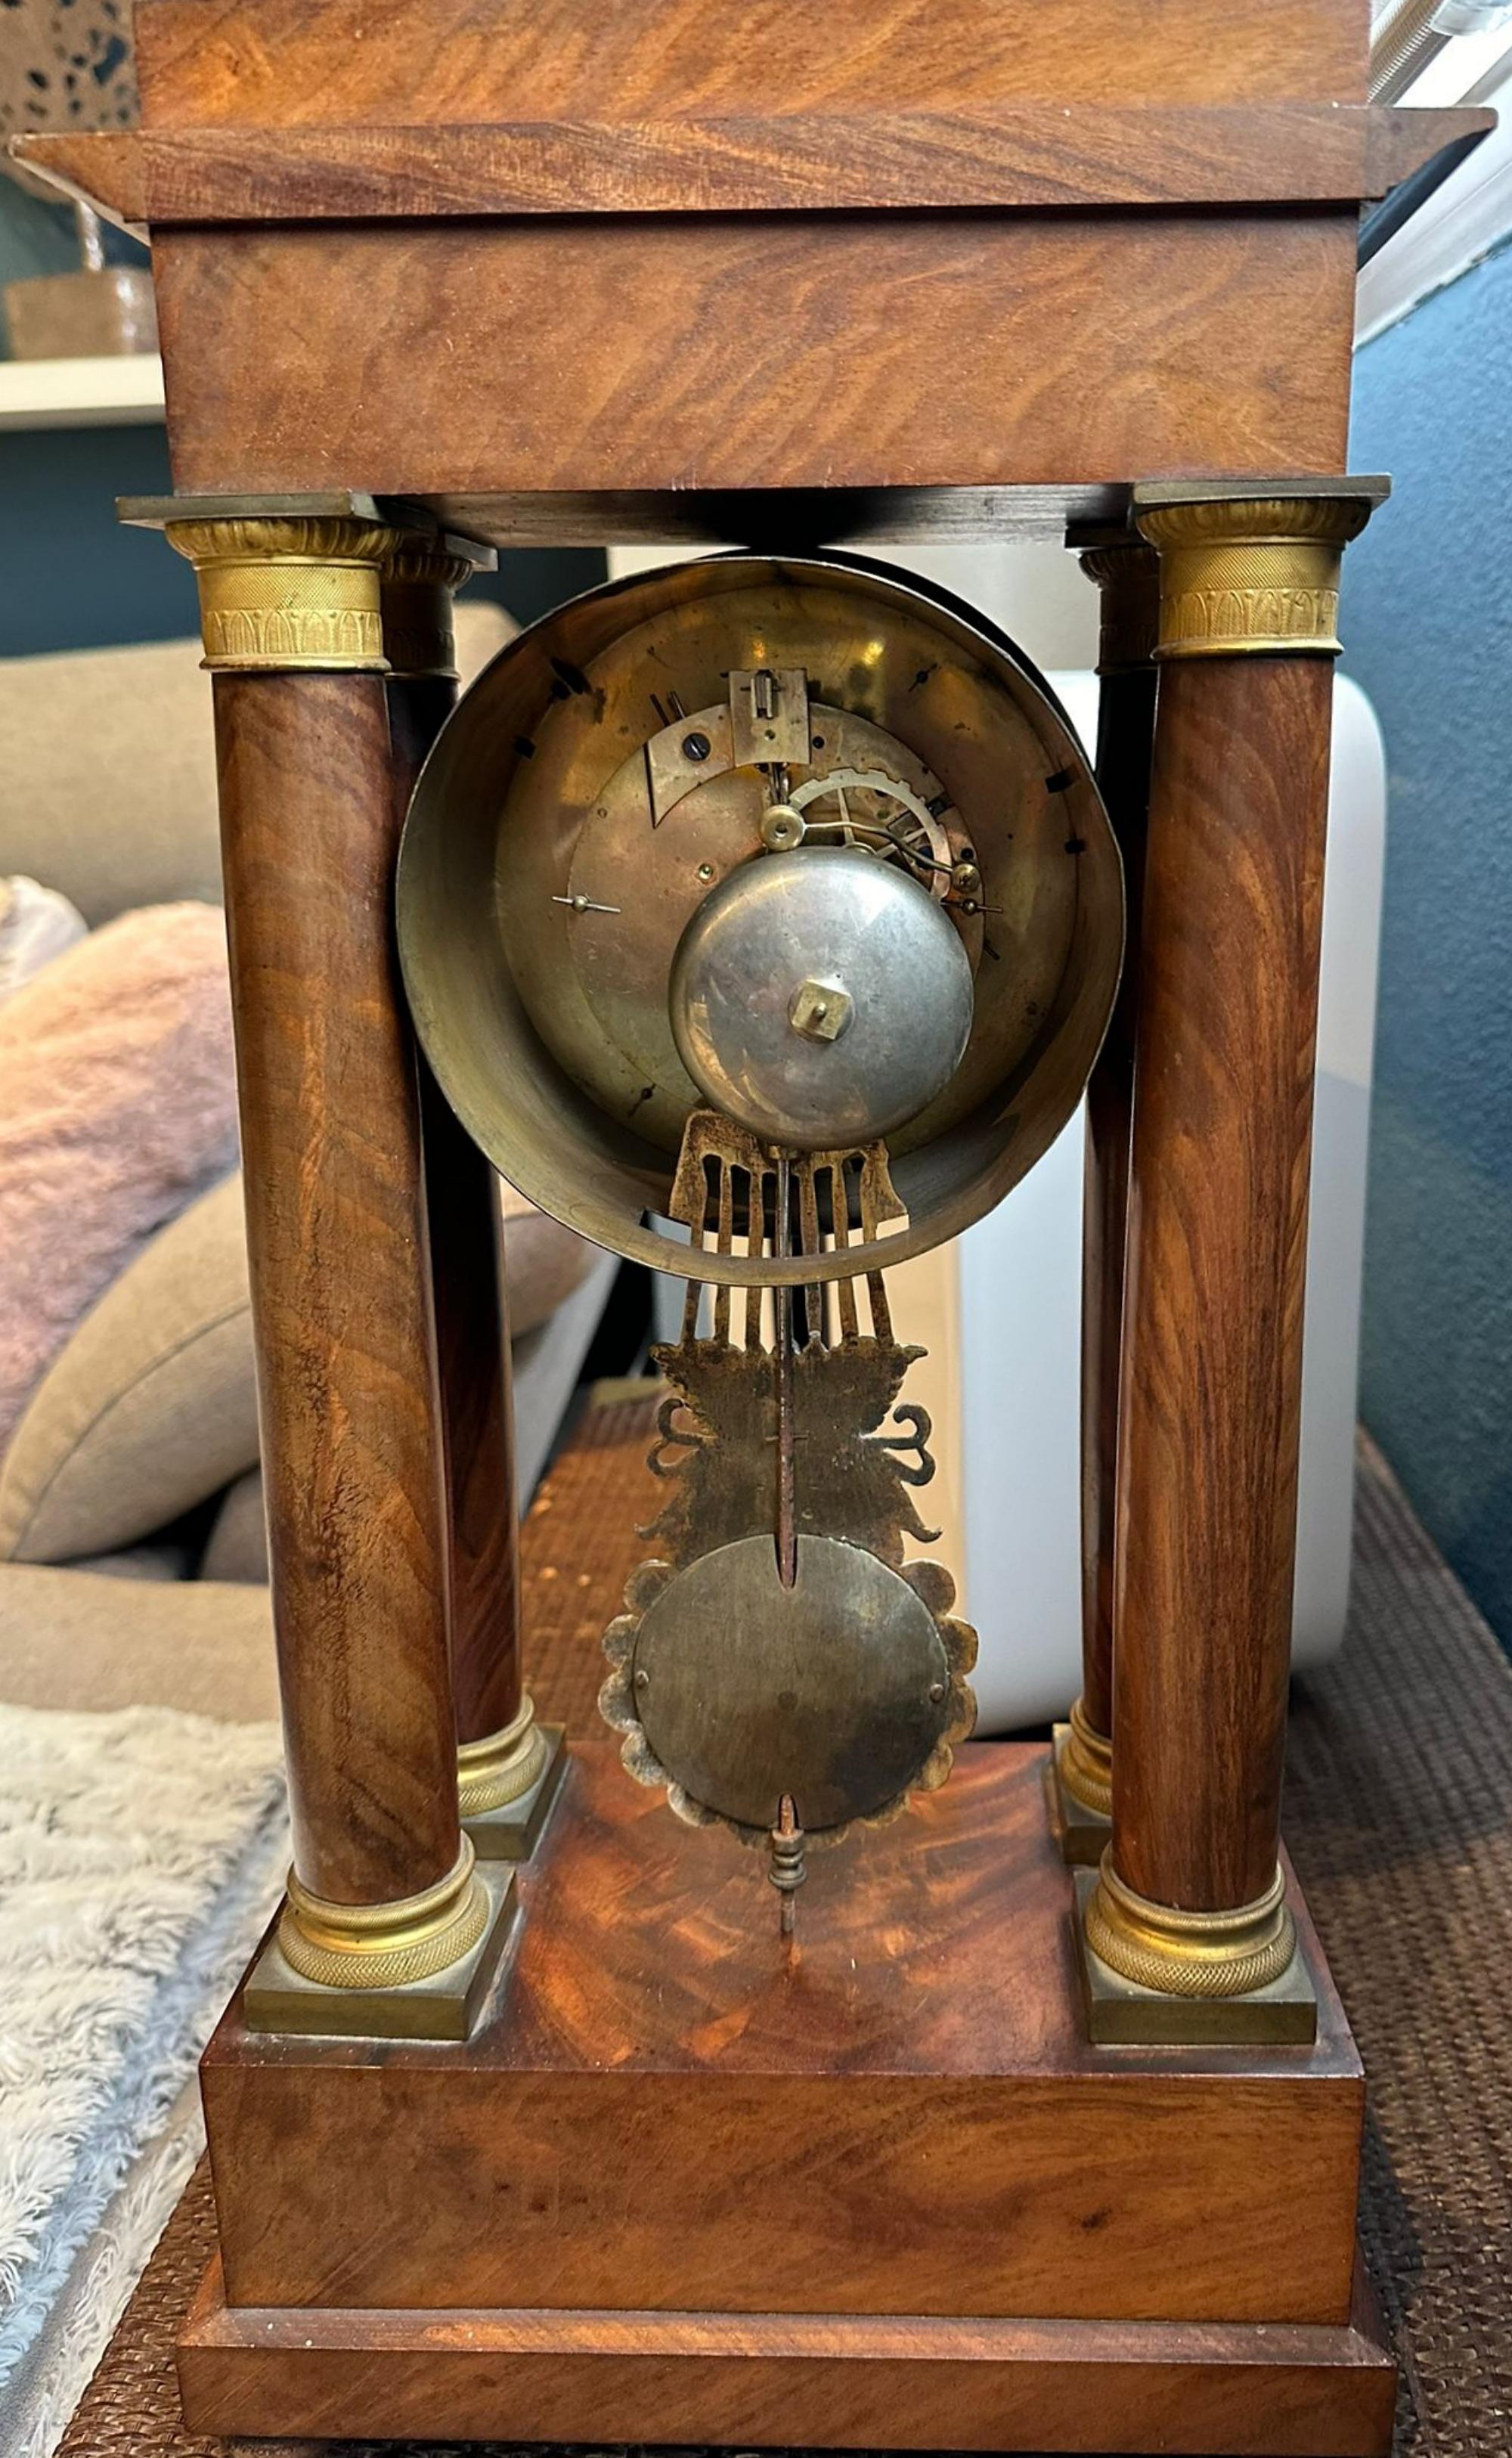 Etonnante horloge Napoléon III Empire Français 19ème siècle
50cm x 26cm x 15cm
bonne condition
